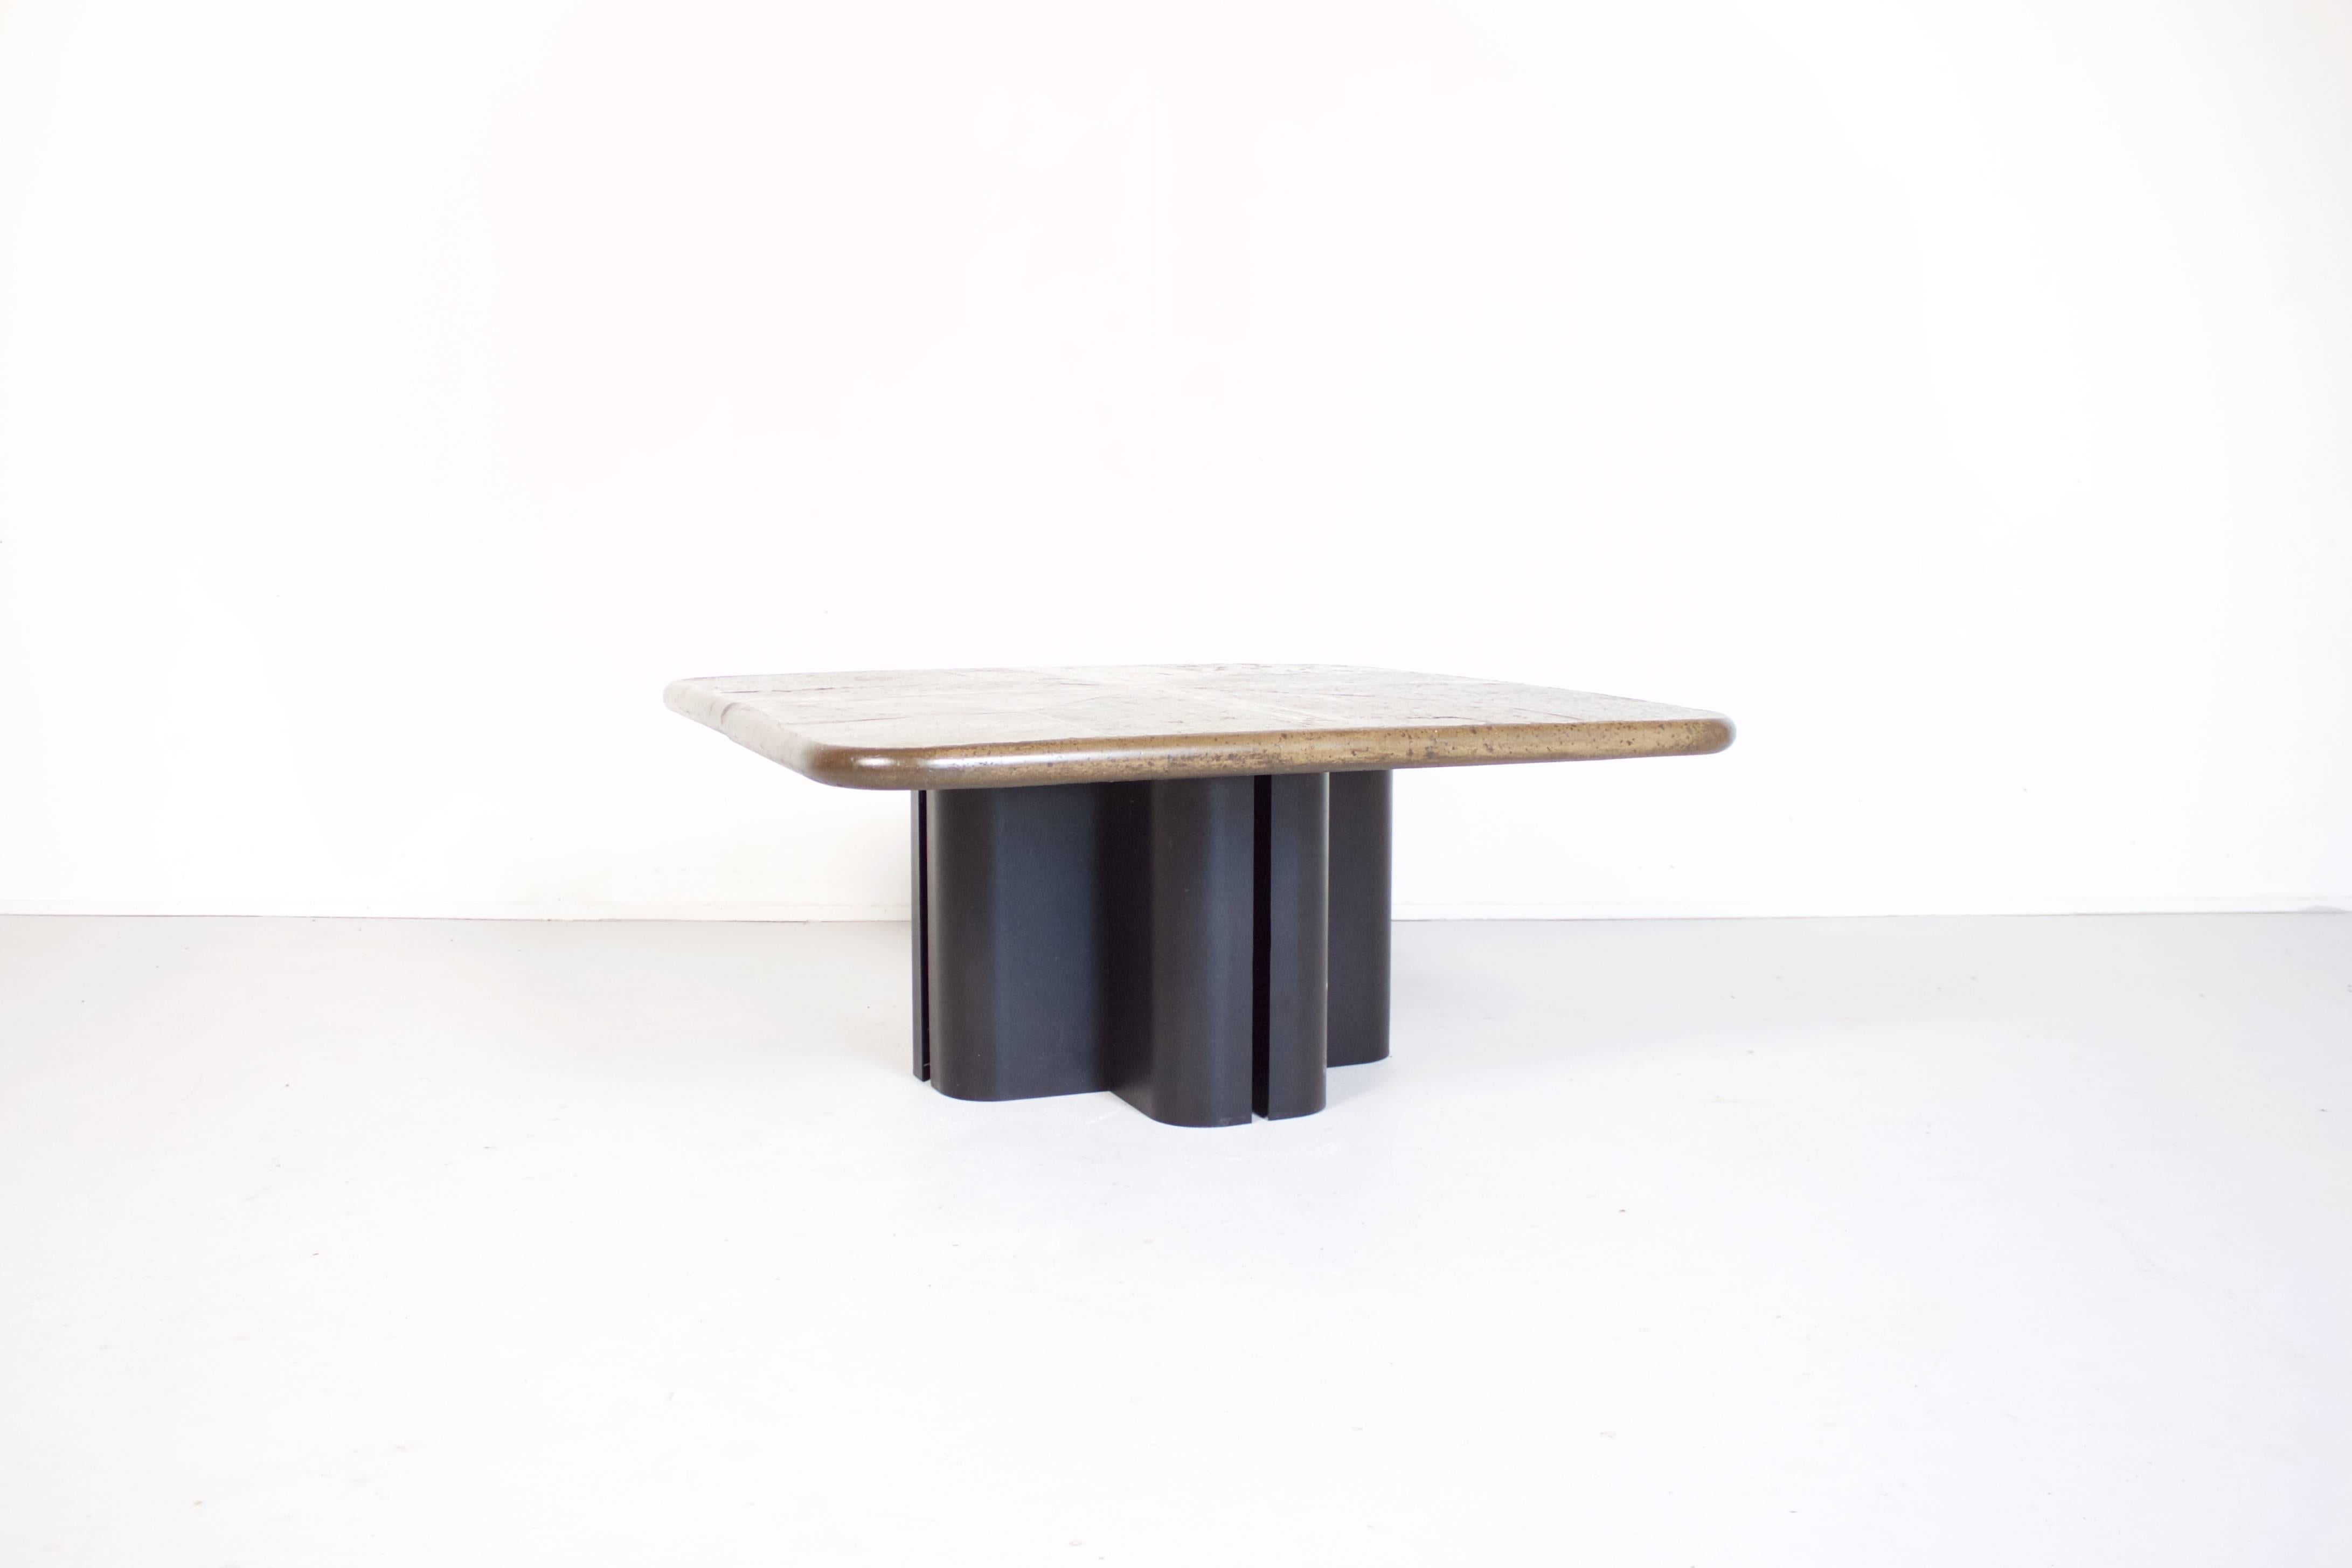 Table basse unique de style Brutaliste dans le style de la sculpture hollandaise A&M. 

Le plateau de la table est une mosaïque de panneaux d'ardoise et de détails en laiton. 

La table est signée par l'artiste sur un insert en laiton situé sur le